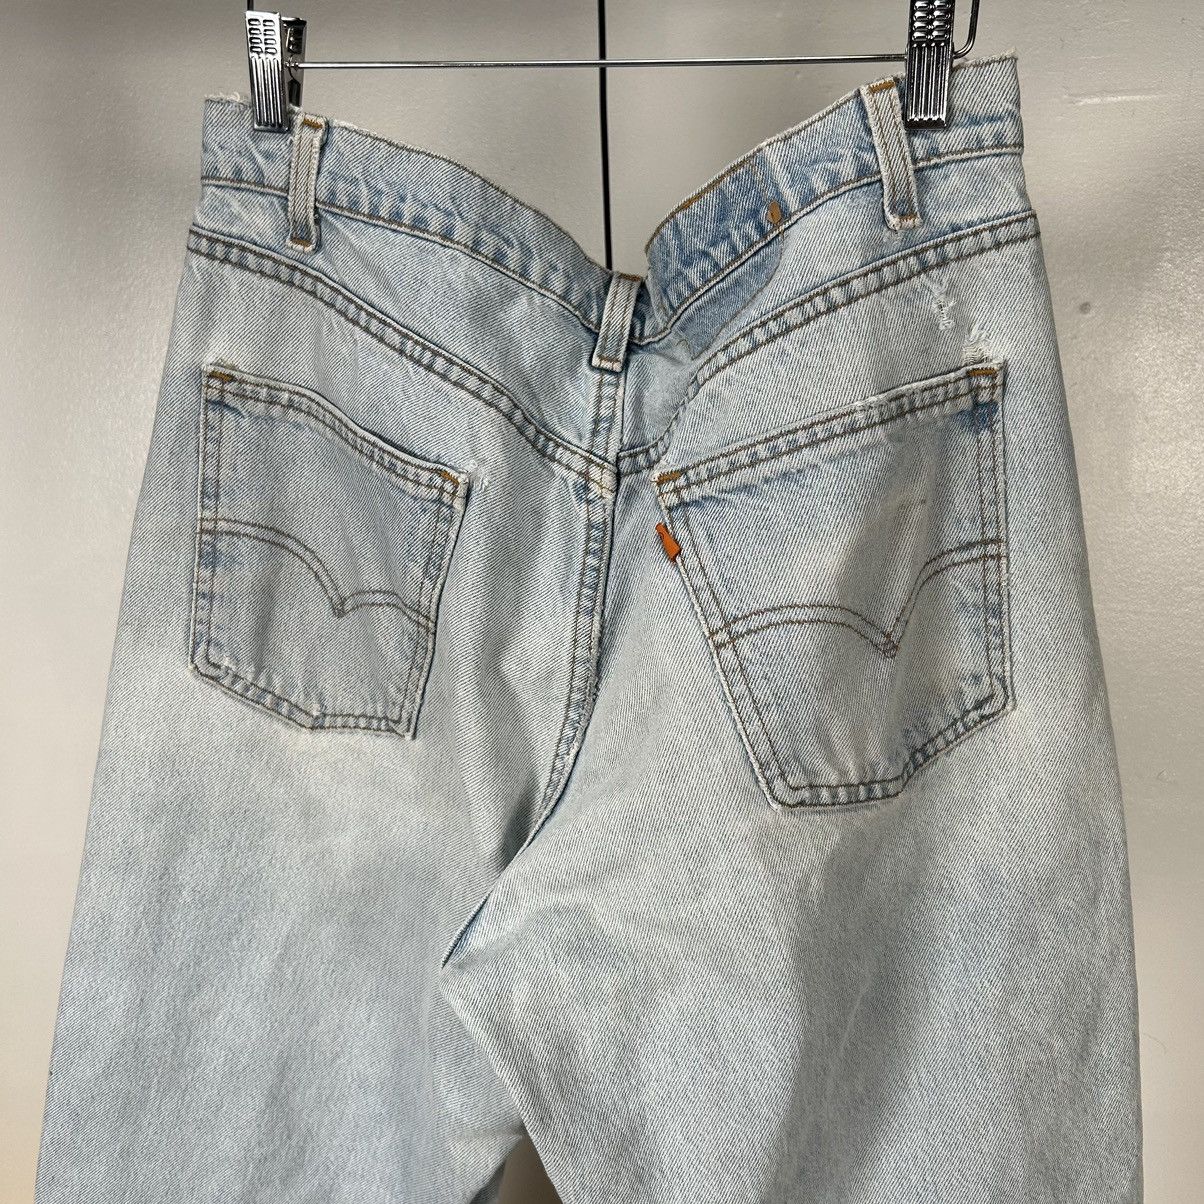 Vintage Vintage Levi’s 550 orange tab distressed jeans Size US 35 - 4 Thumbnail